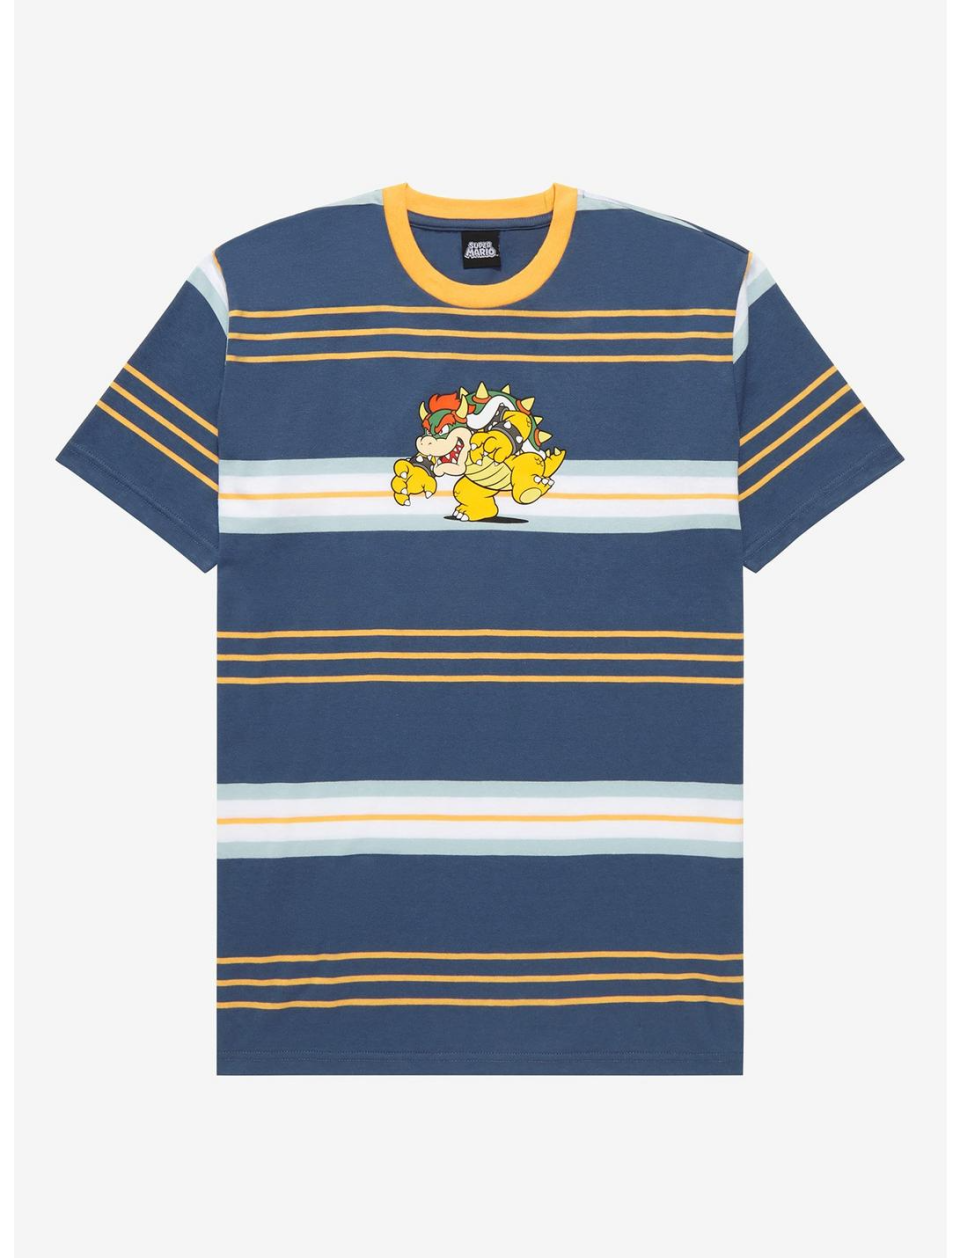 Nintendo Super Mario Bros. Bowser Striped T-Shirt